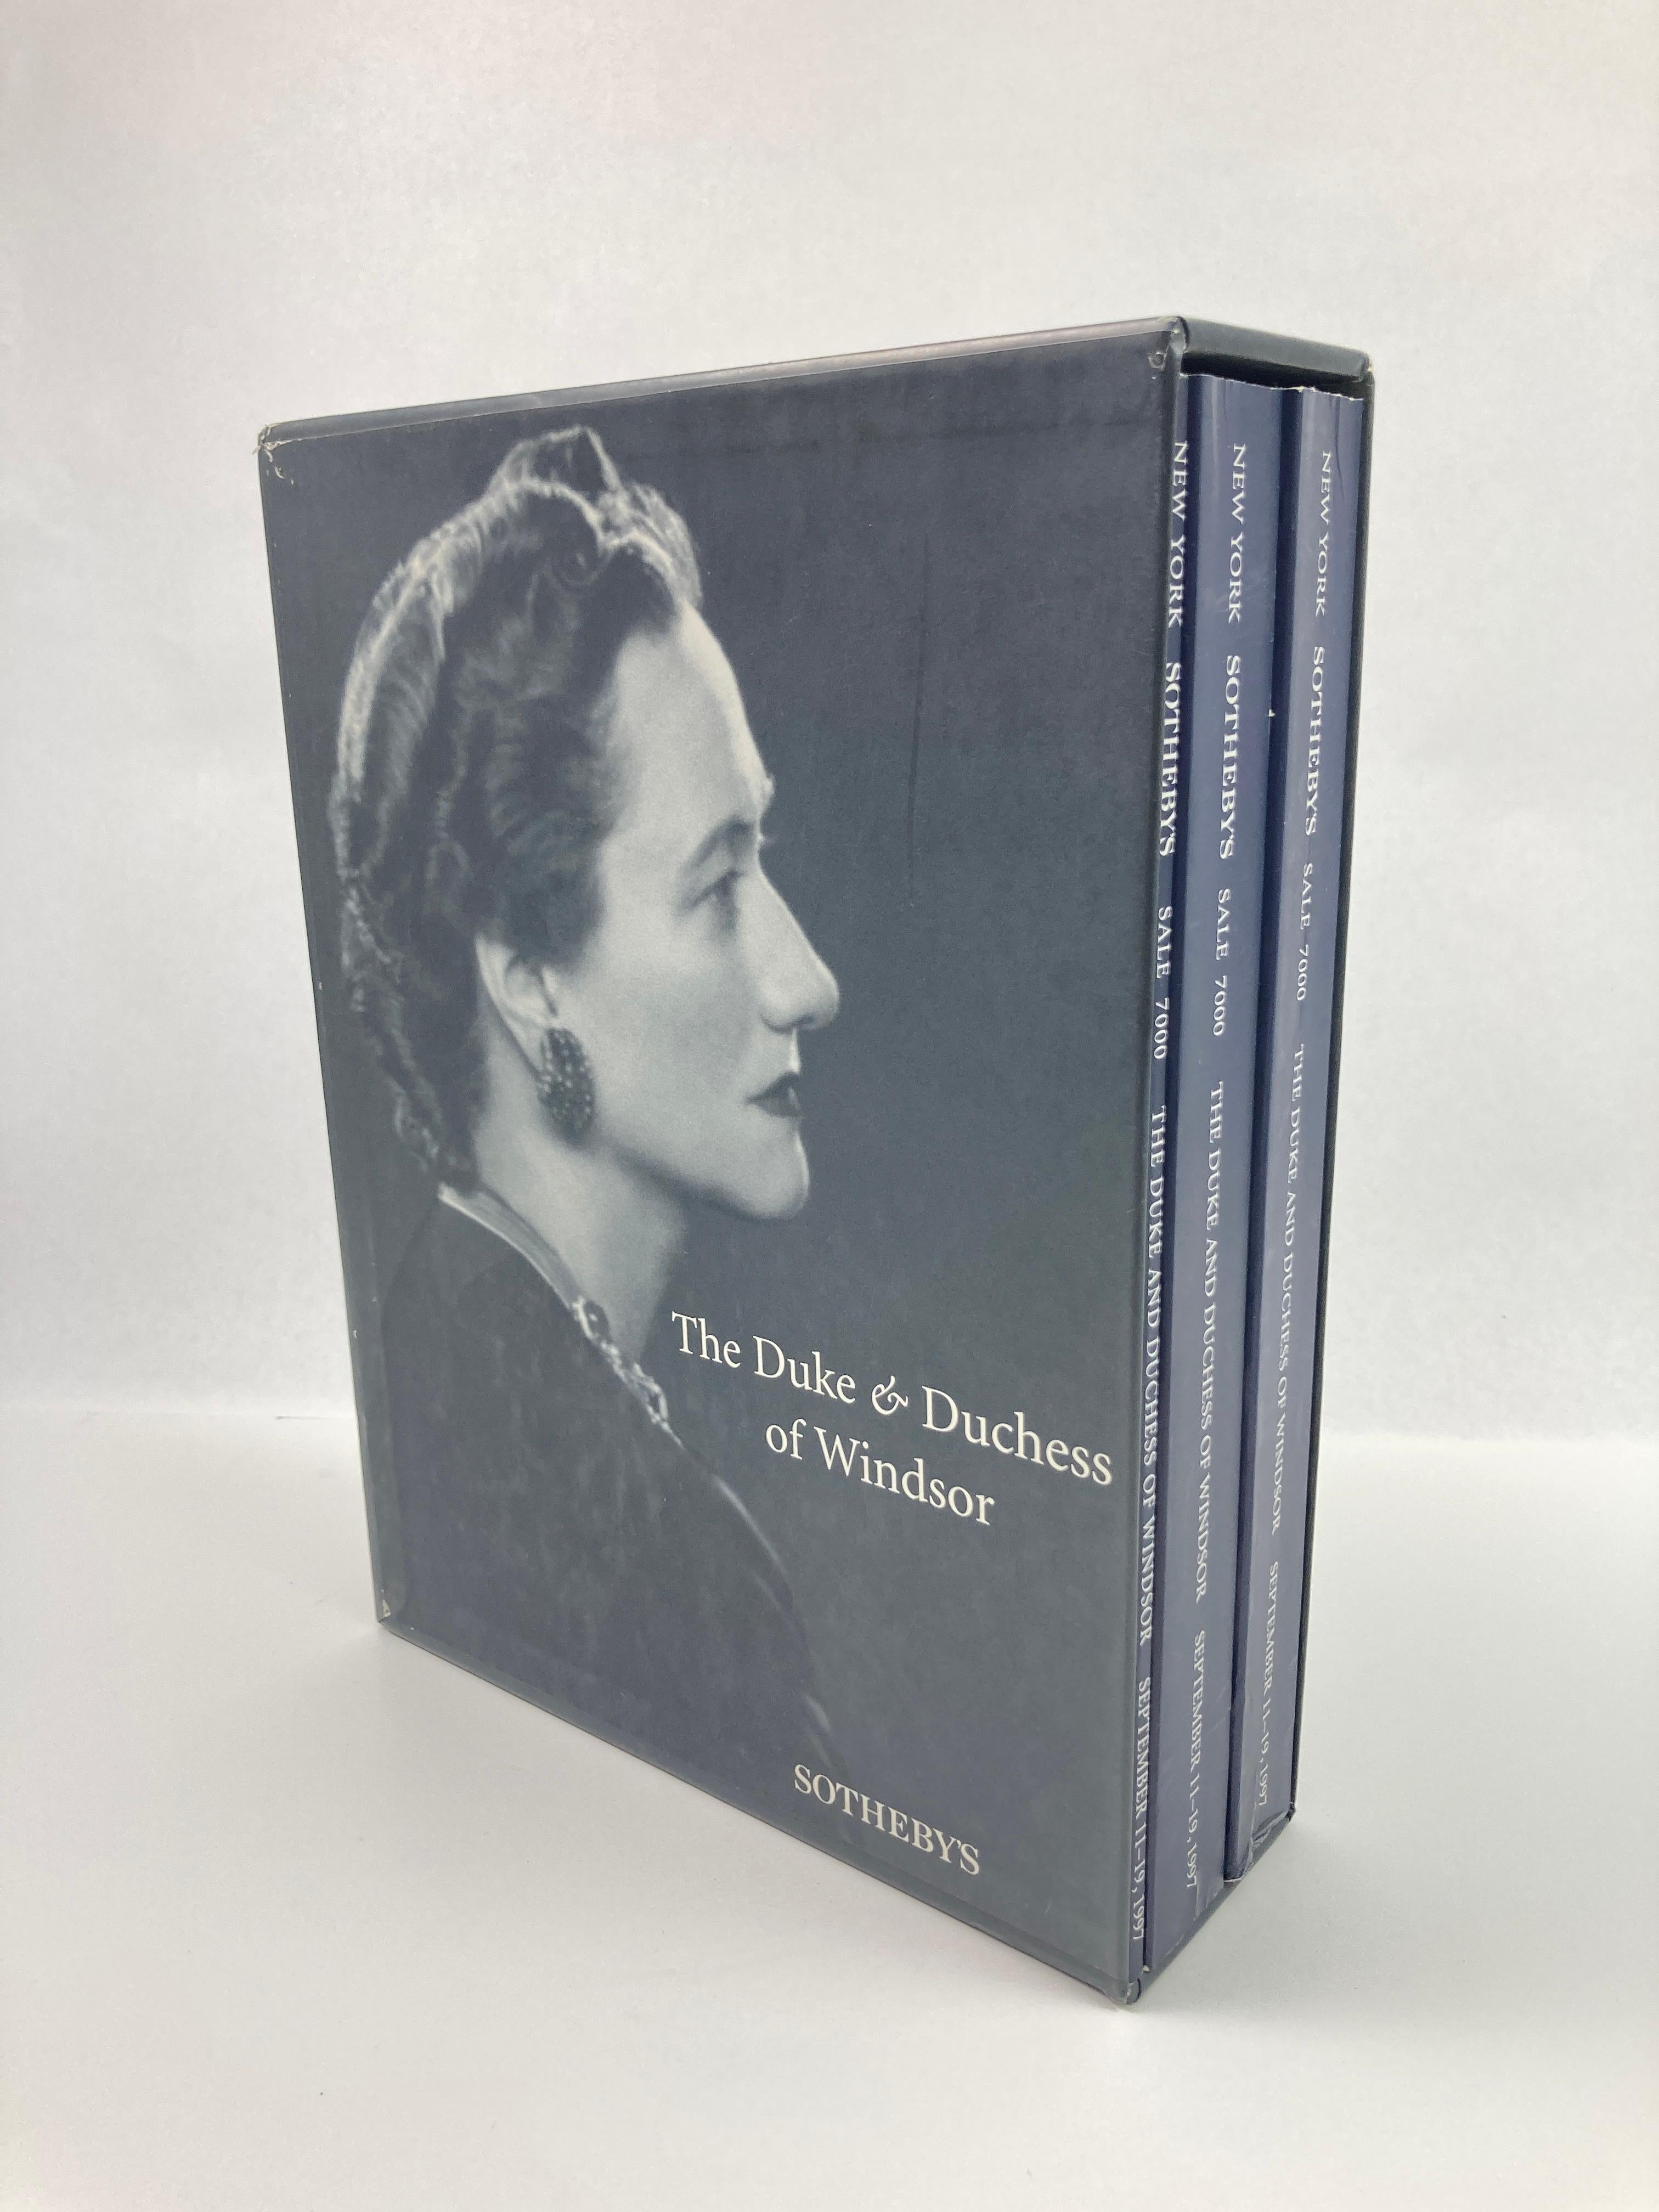 The Duke and Duchess of Windsor Auction Sotheby's Books Catalogs in Slipcase Box (Le duc et la duchesse de Windsor, ventes aux enchères, catalogues de livres de Sotheby's dans une boîte) en vente 2